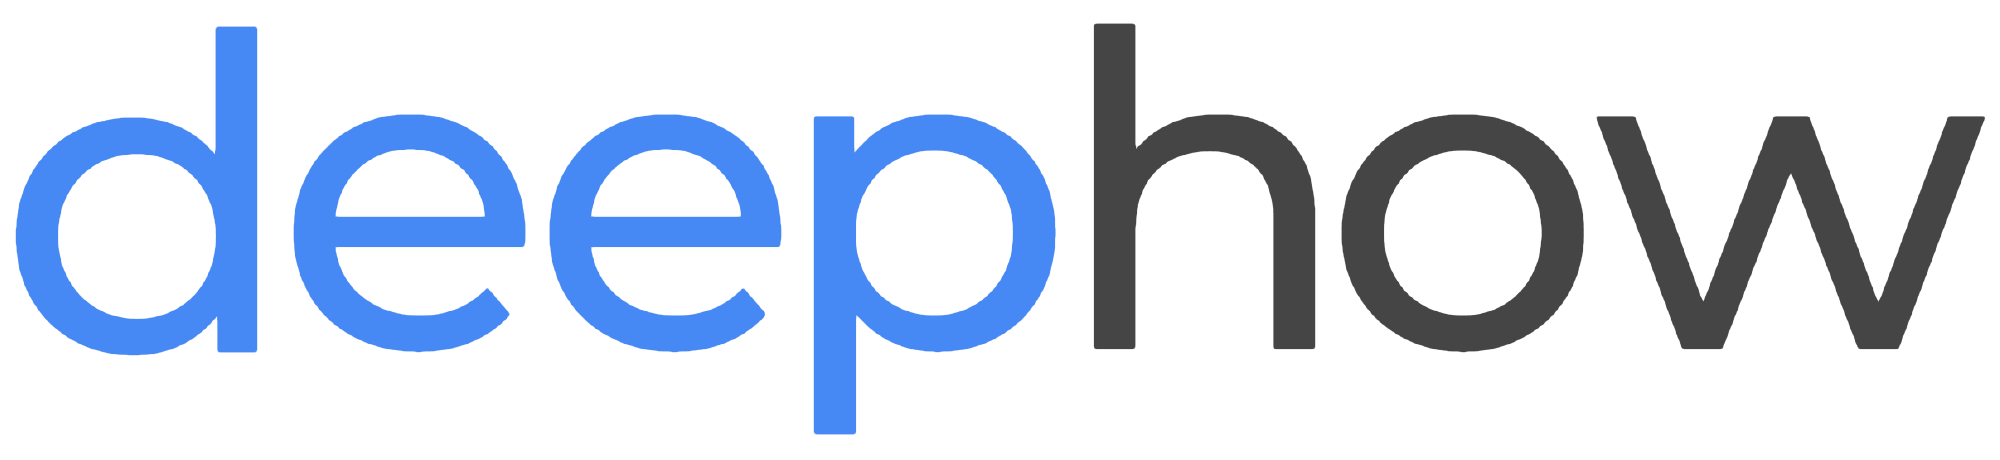 Deephow-logo-480×110-01